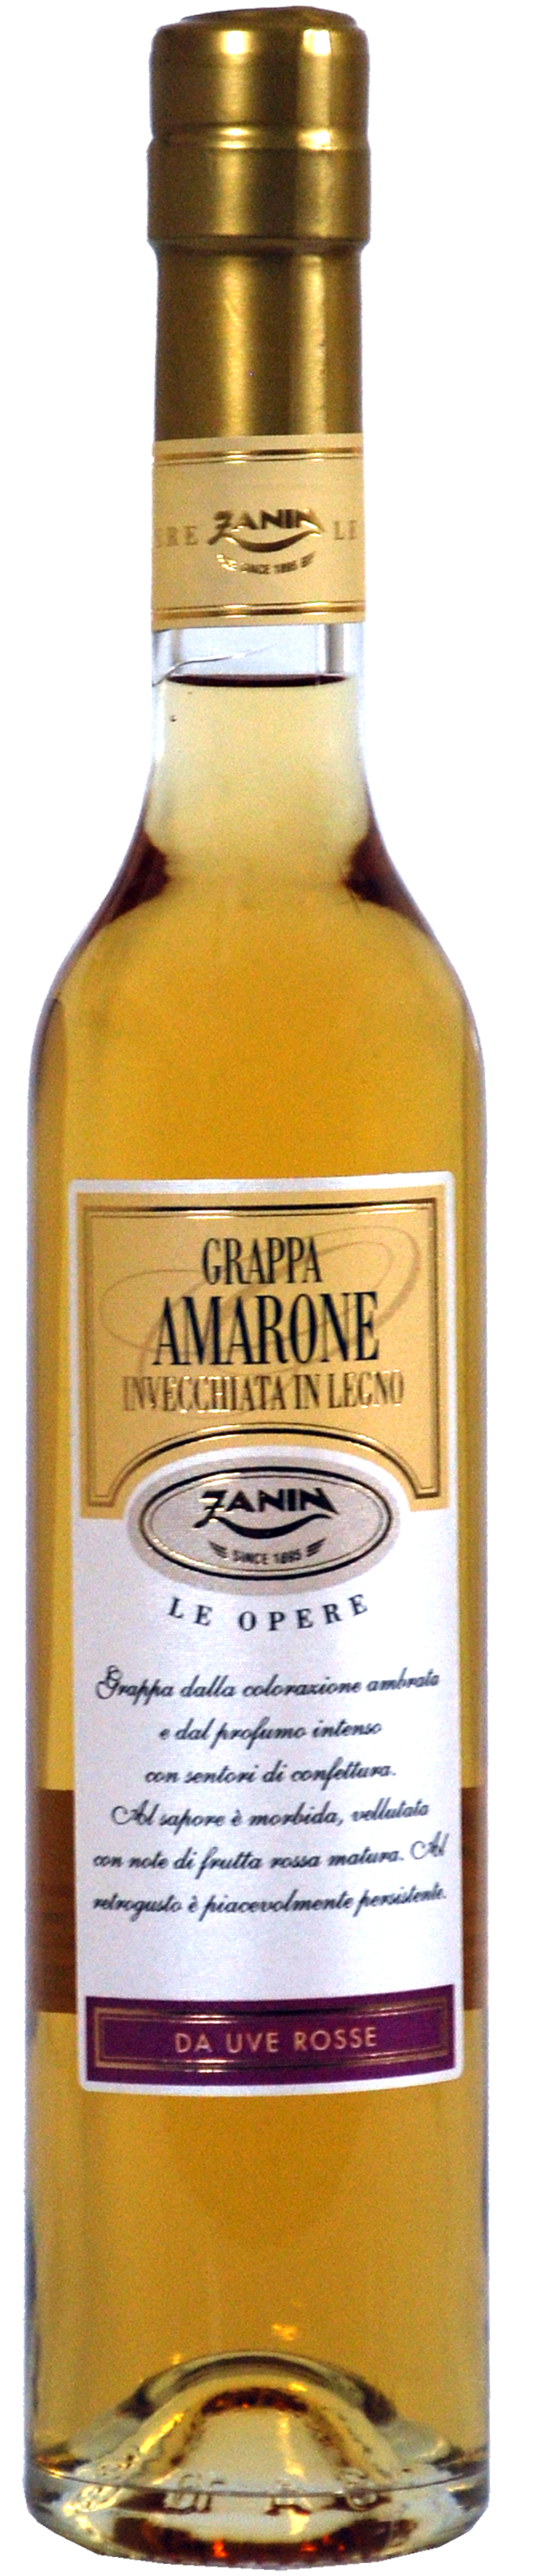 Zanin Grappa Amarone Inv. da Uve Rosse Le Opere - 0.5 L